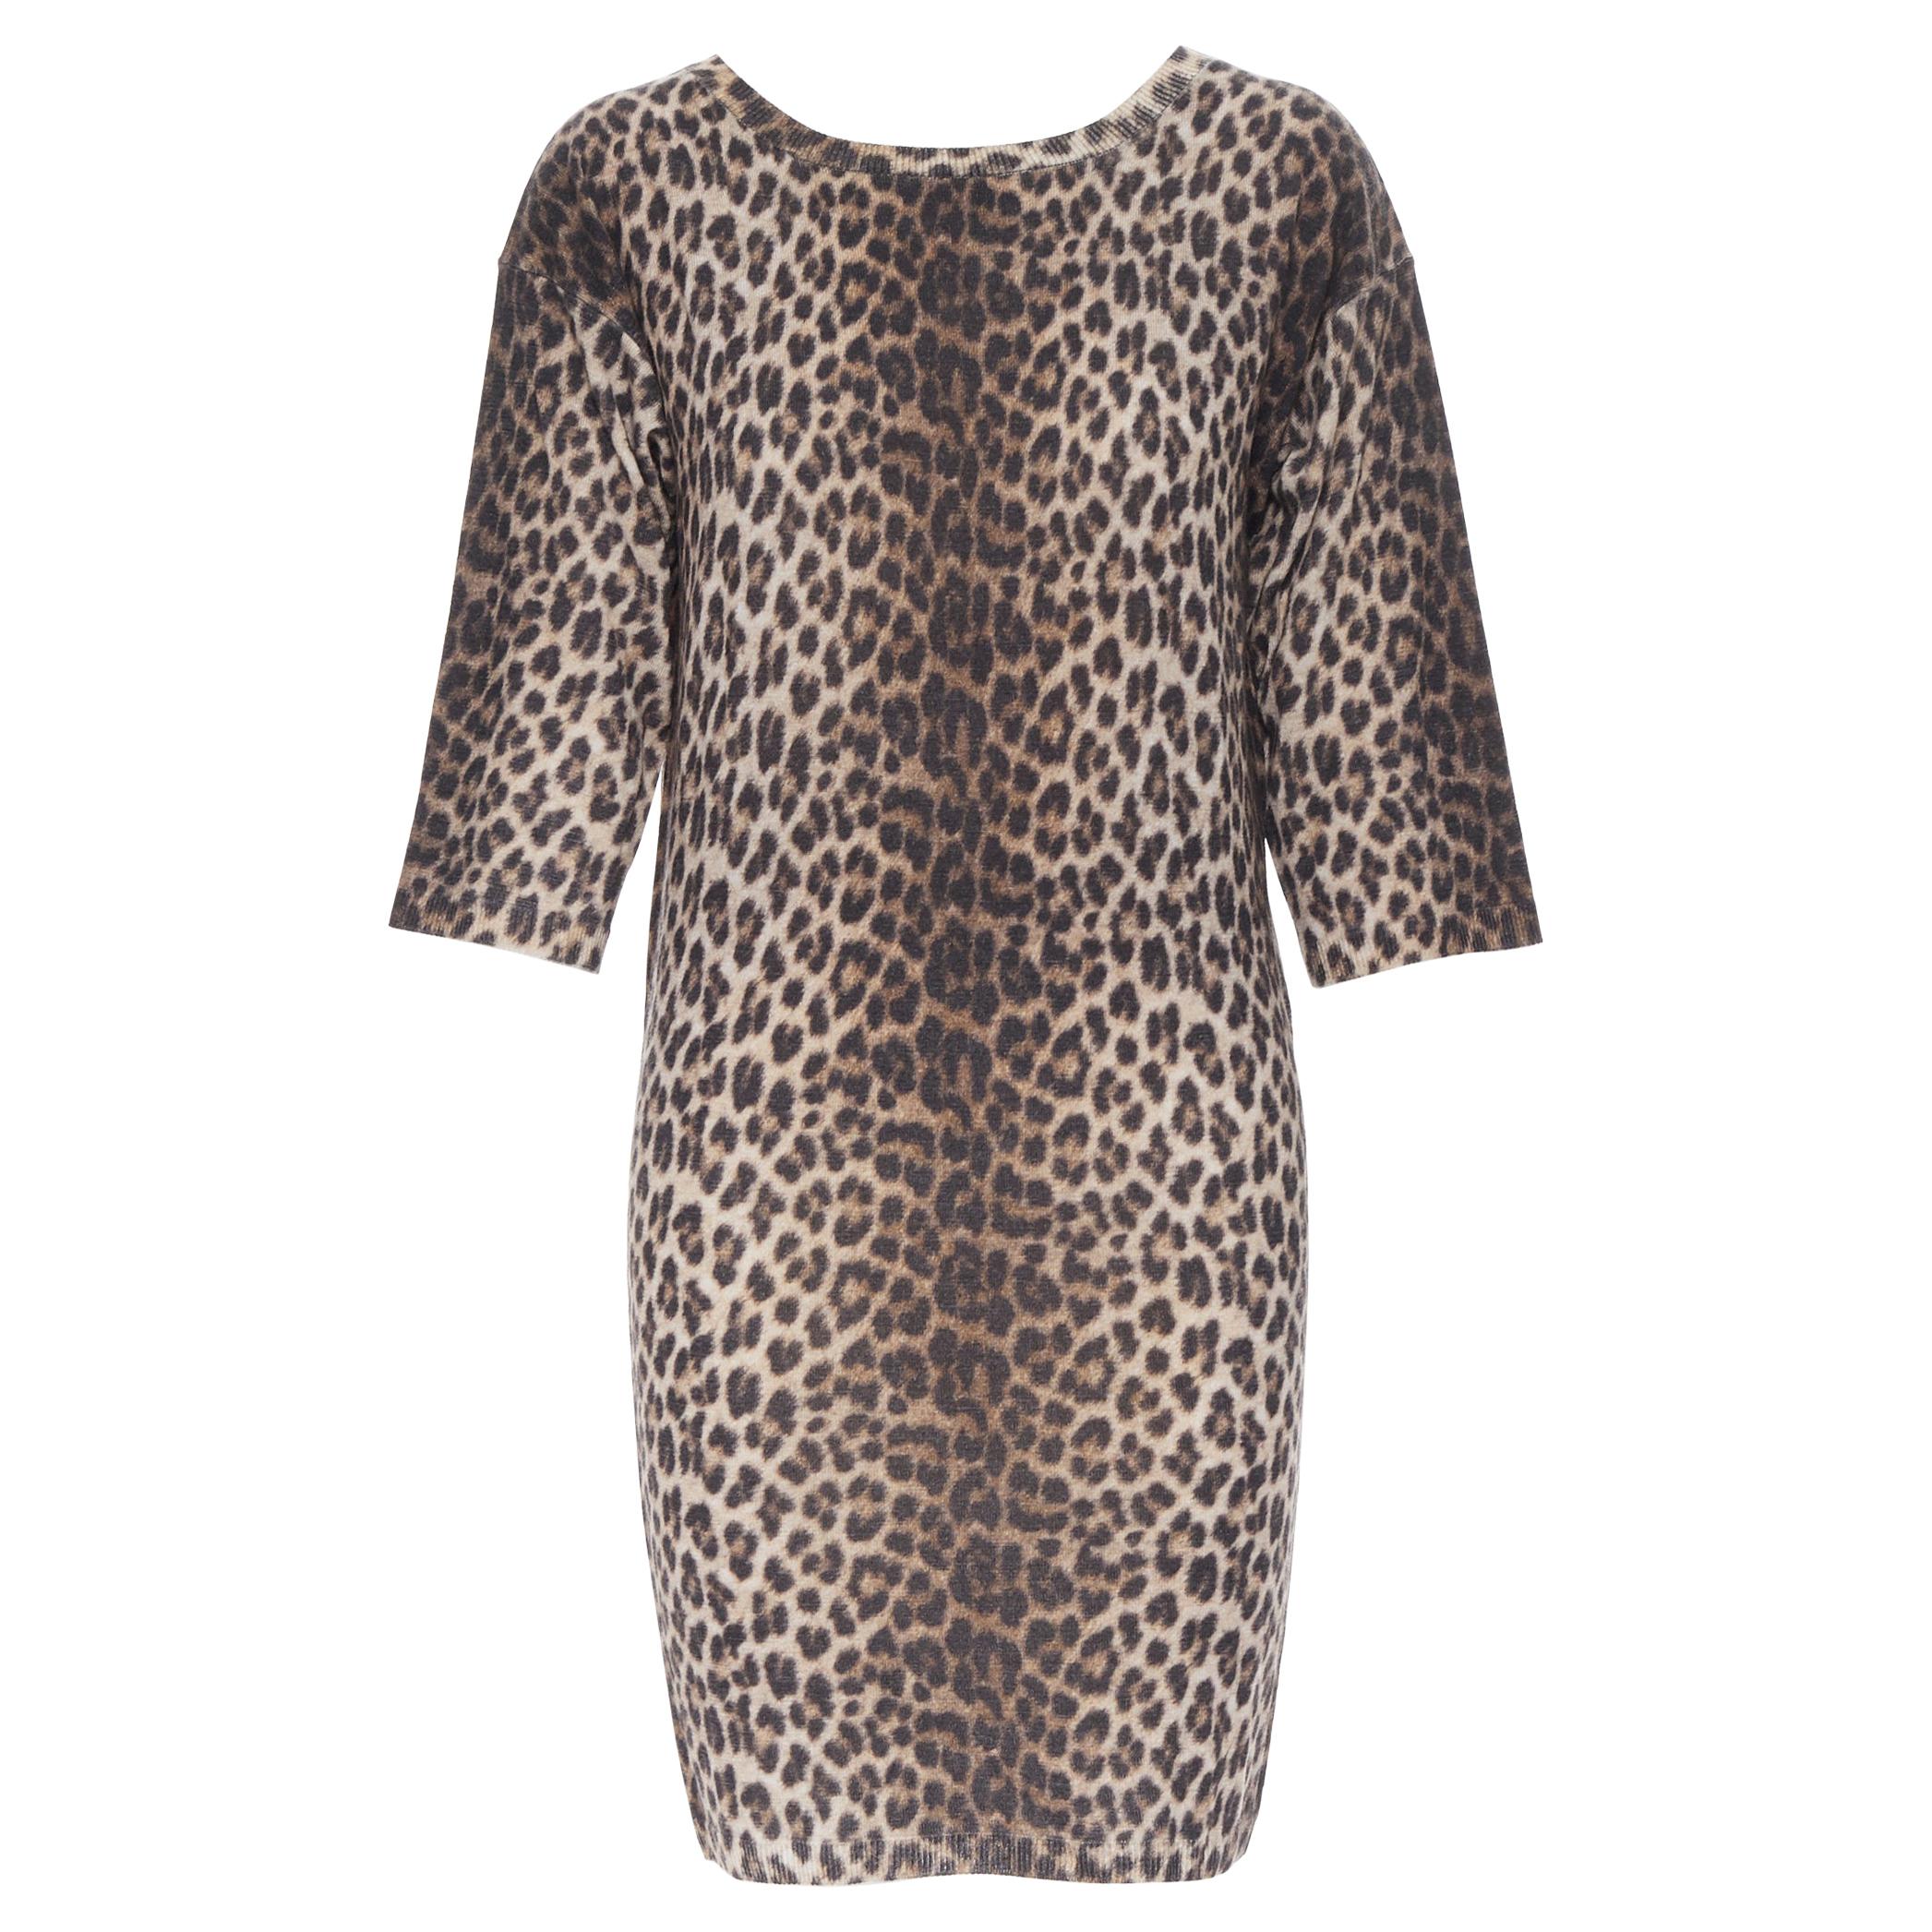 LANVIN ELBAZ 2010 100% wool brown leopard spot 3/4 sleeve knit sweater dress XS